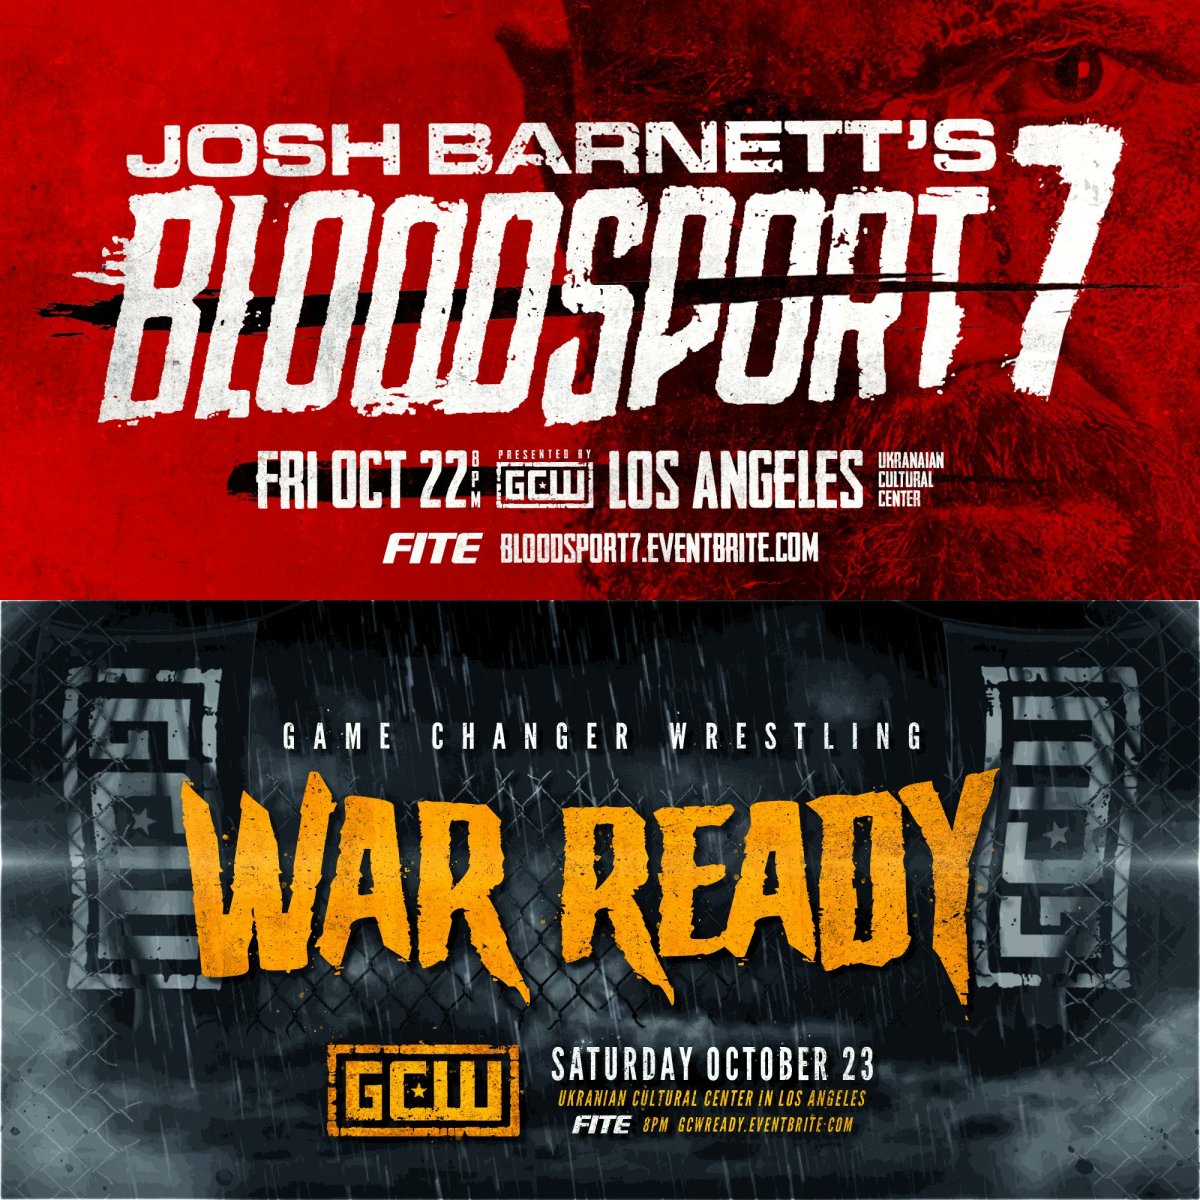 The Next GCW Show in LA Before LA Fights